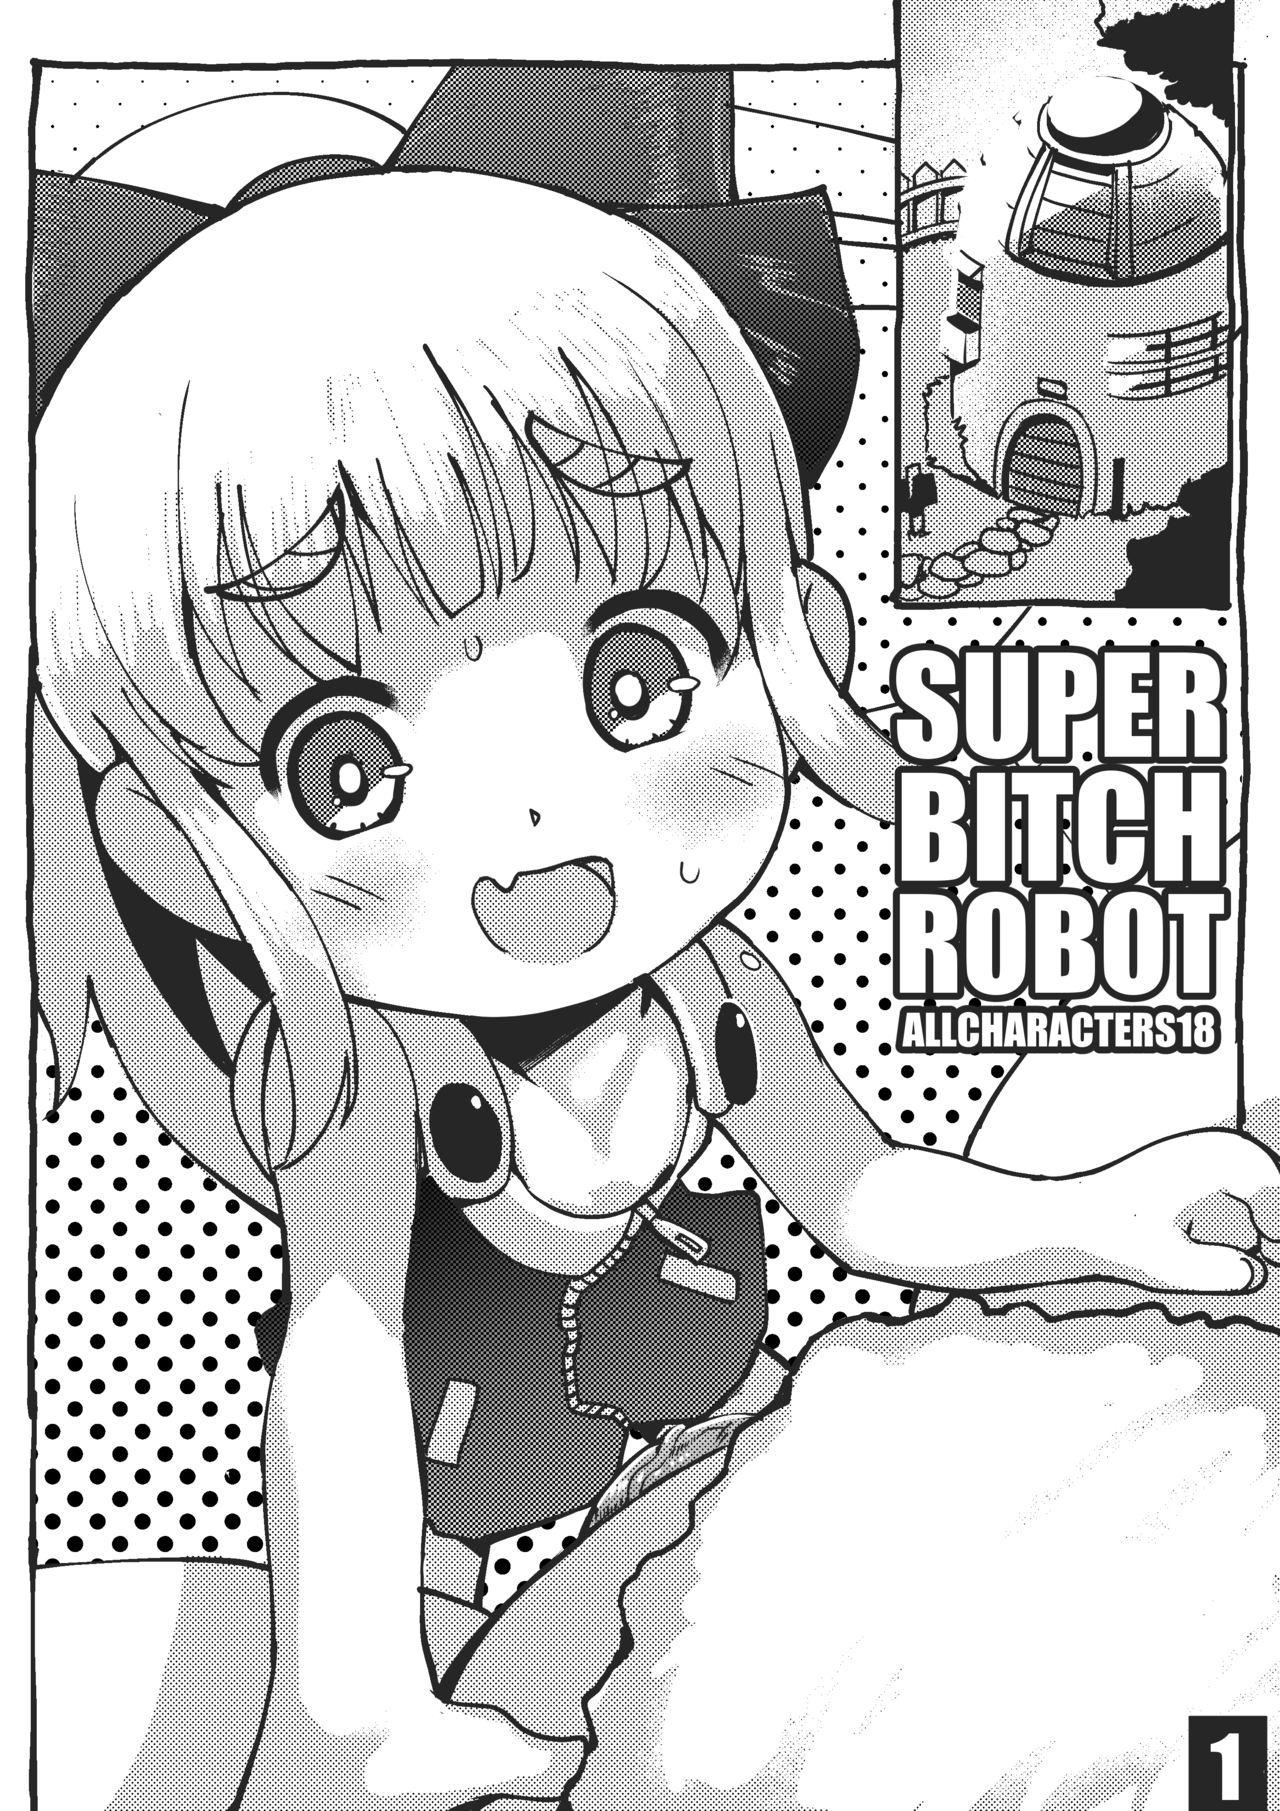 Super Bitch Robot 3